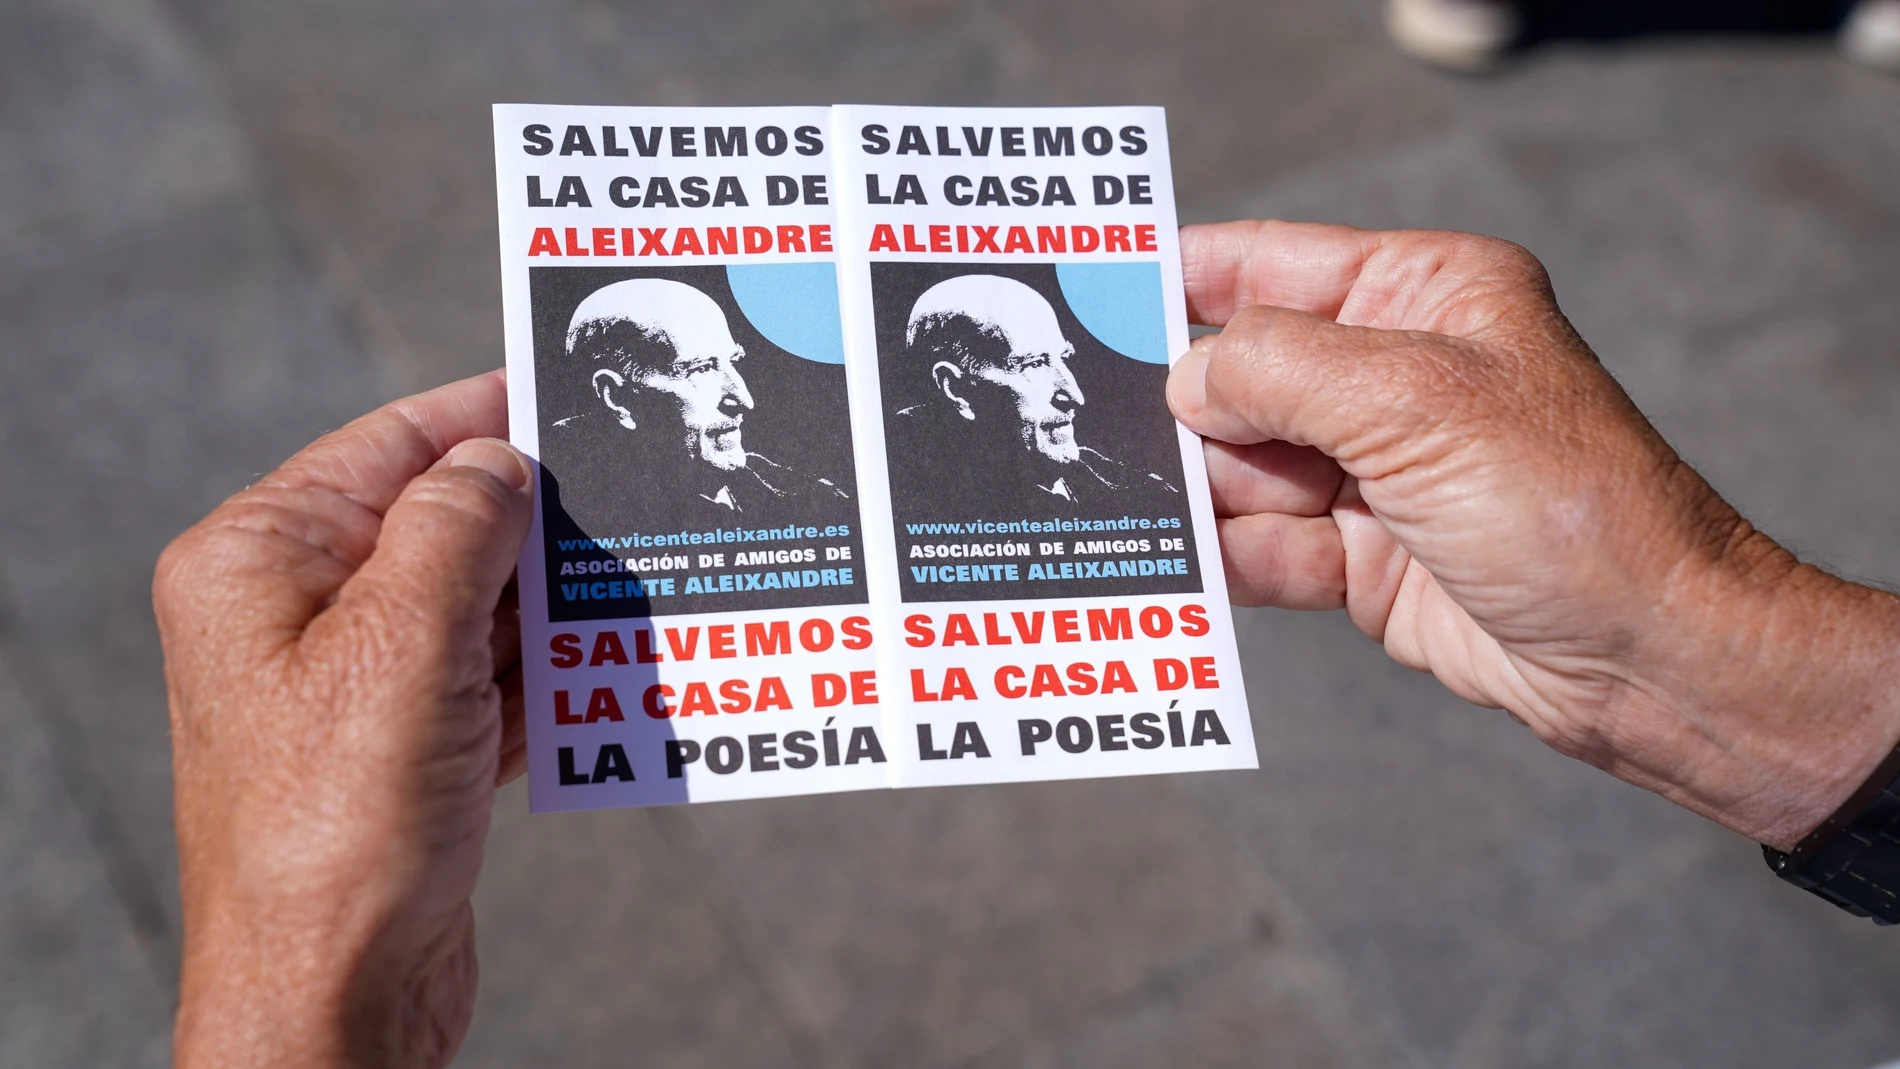 Un cartel en el que se lee: "Salvemos la casa de Aleixandre, salvemos la casa de la poesía", durante una manifestación por la protección y salvaguarda de la casa del poeta Vicente Aleixandre, en la Puerta del Sol de Madrid.